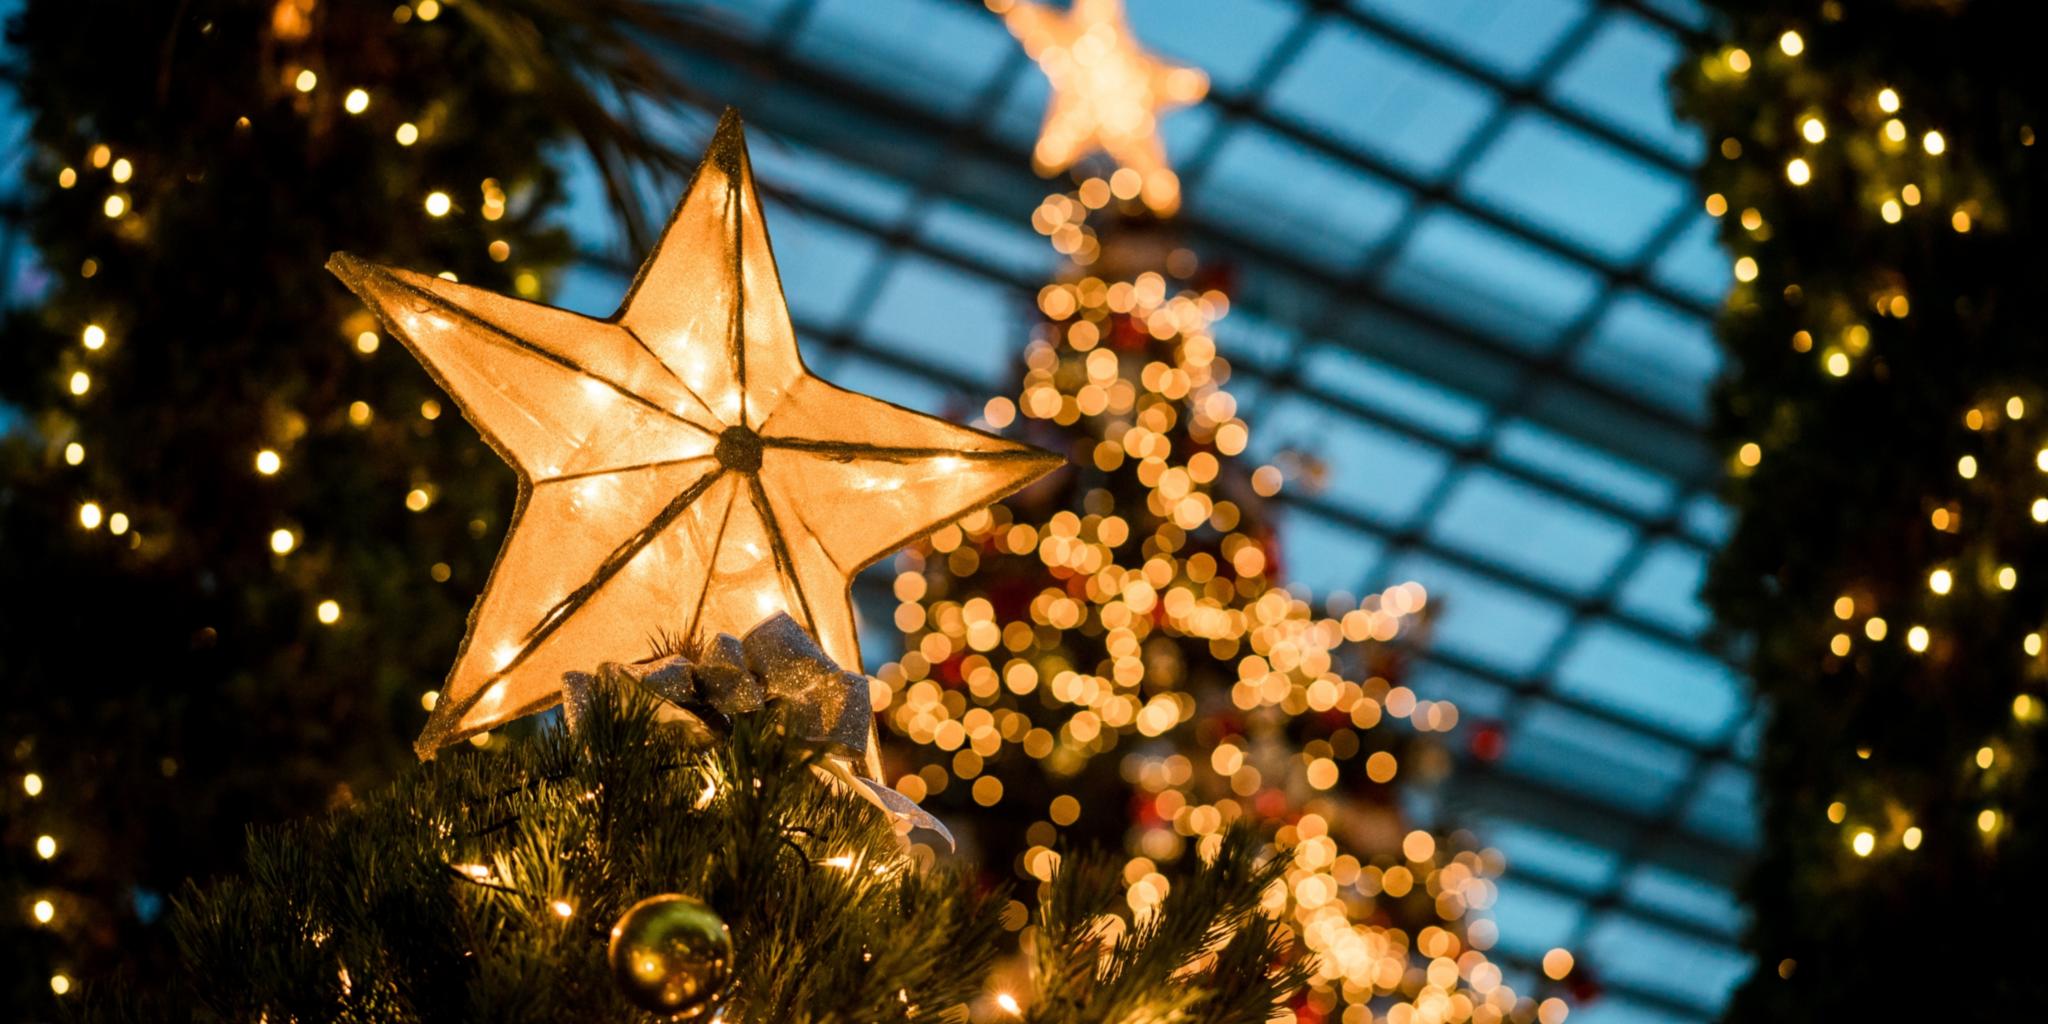 Man sieht im Hintergrund beleuchtete Weihnachtsbäume - im Vordergrund leuchtet ein Stern auf einem Tannenbaum